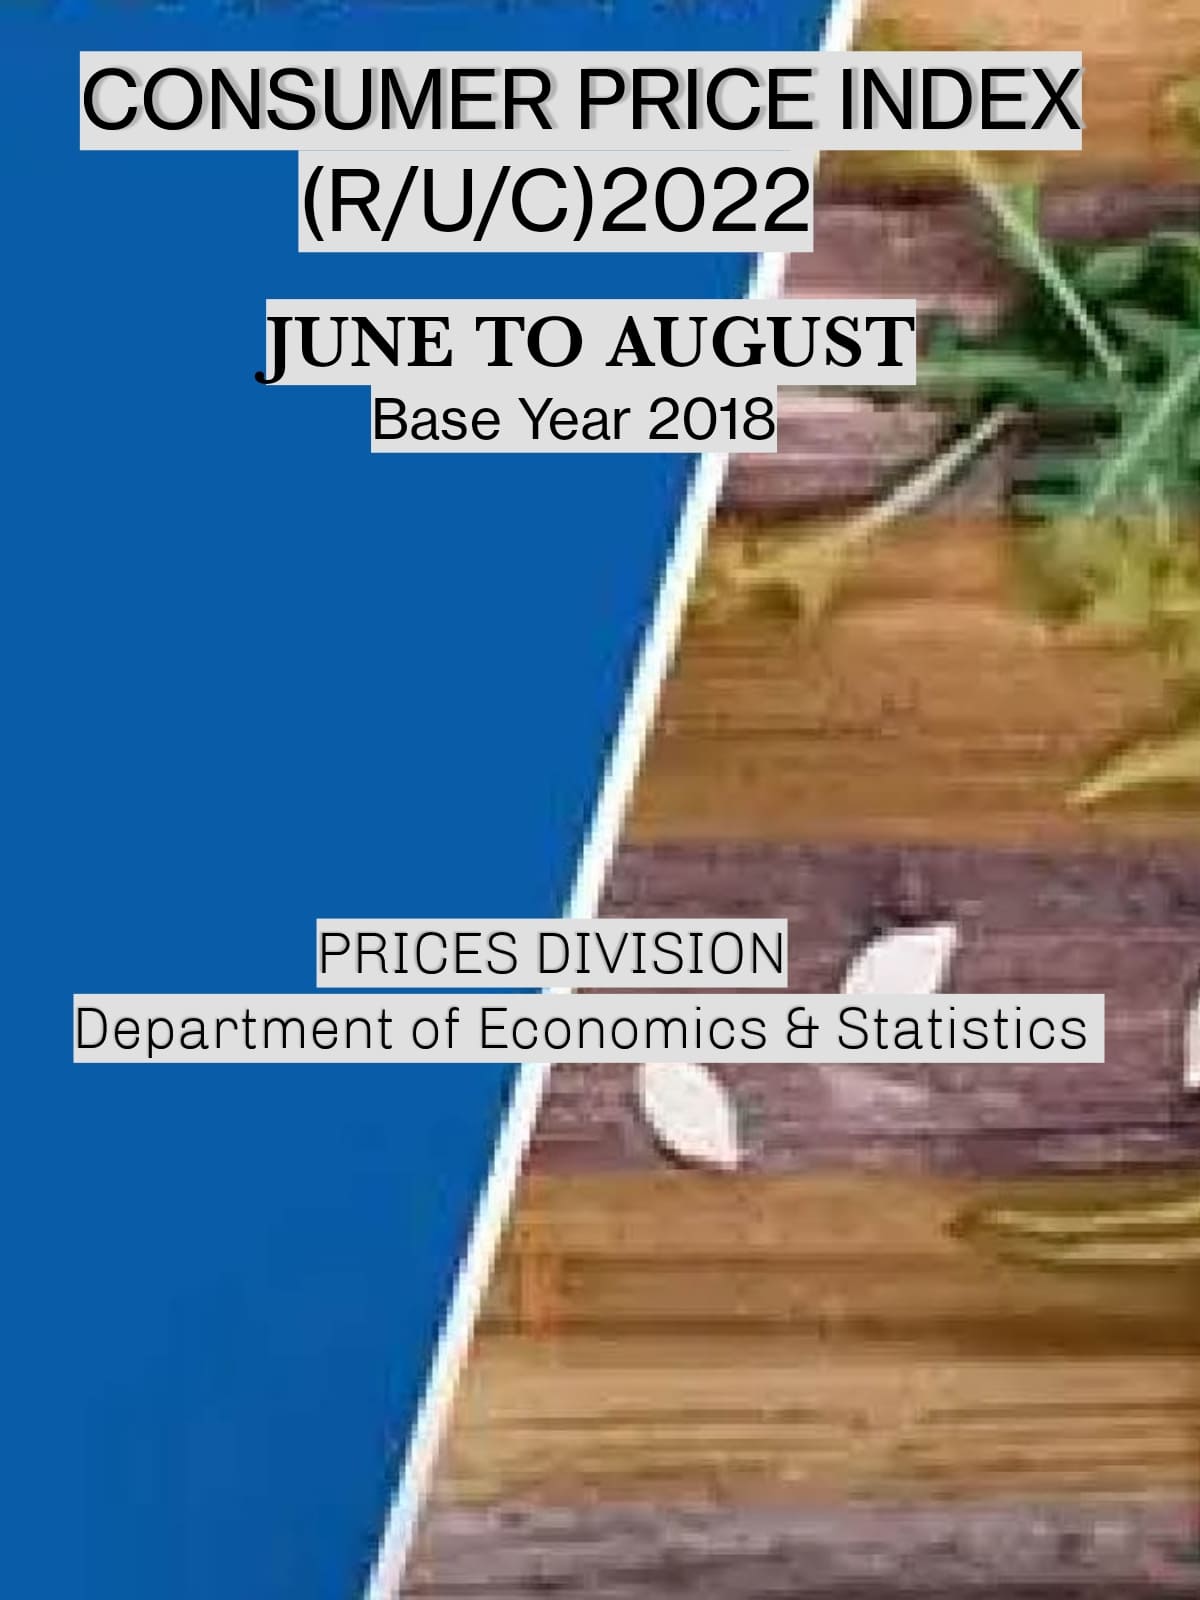 CONSUMER PRICE INDEX (R/U/C) JUNE, JULY,AUGUST 2022